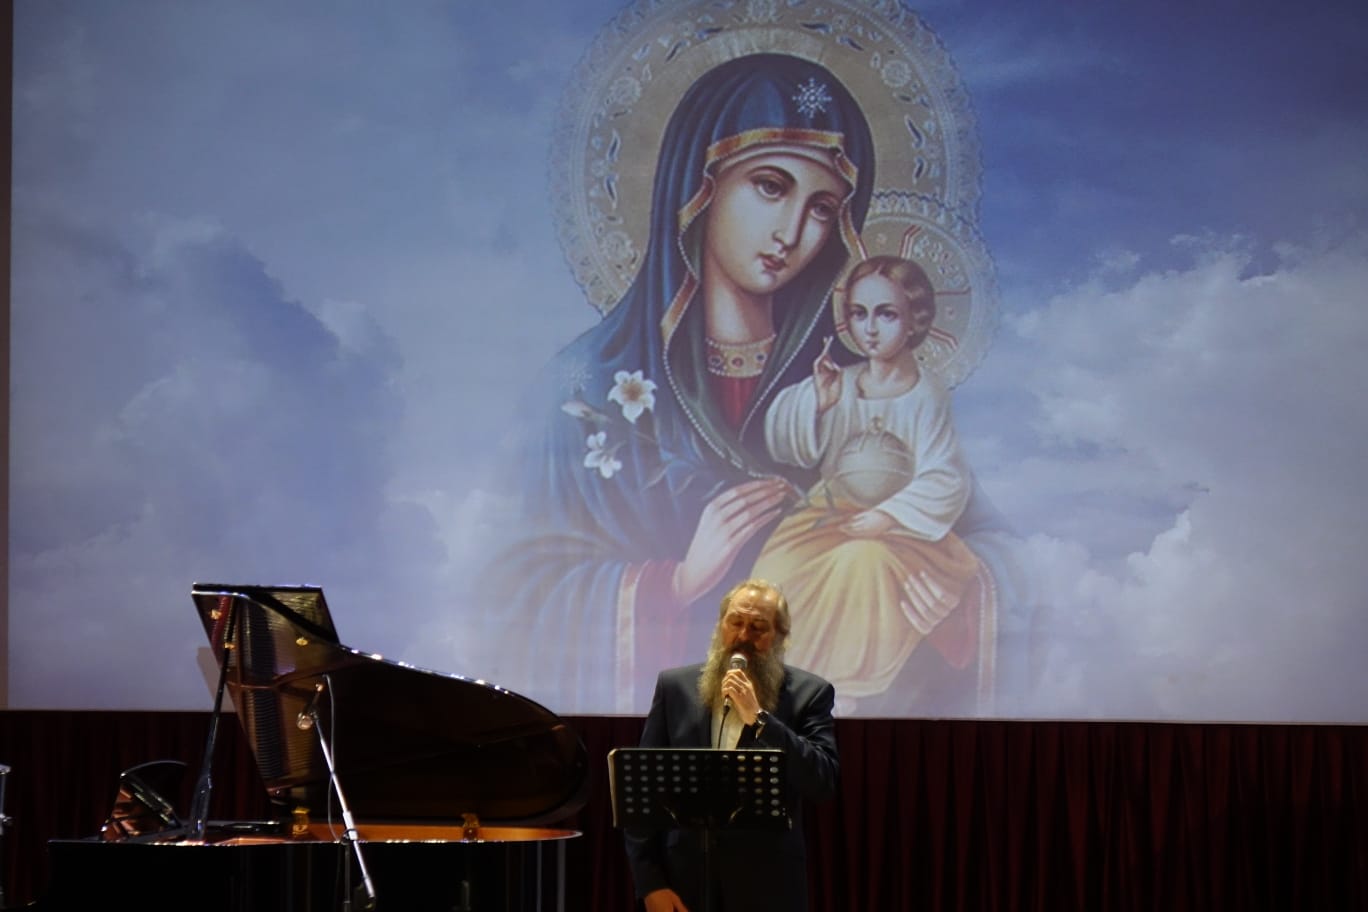 Слушать православные песни православных исполнителей